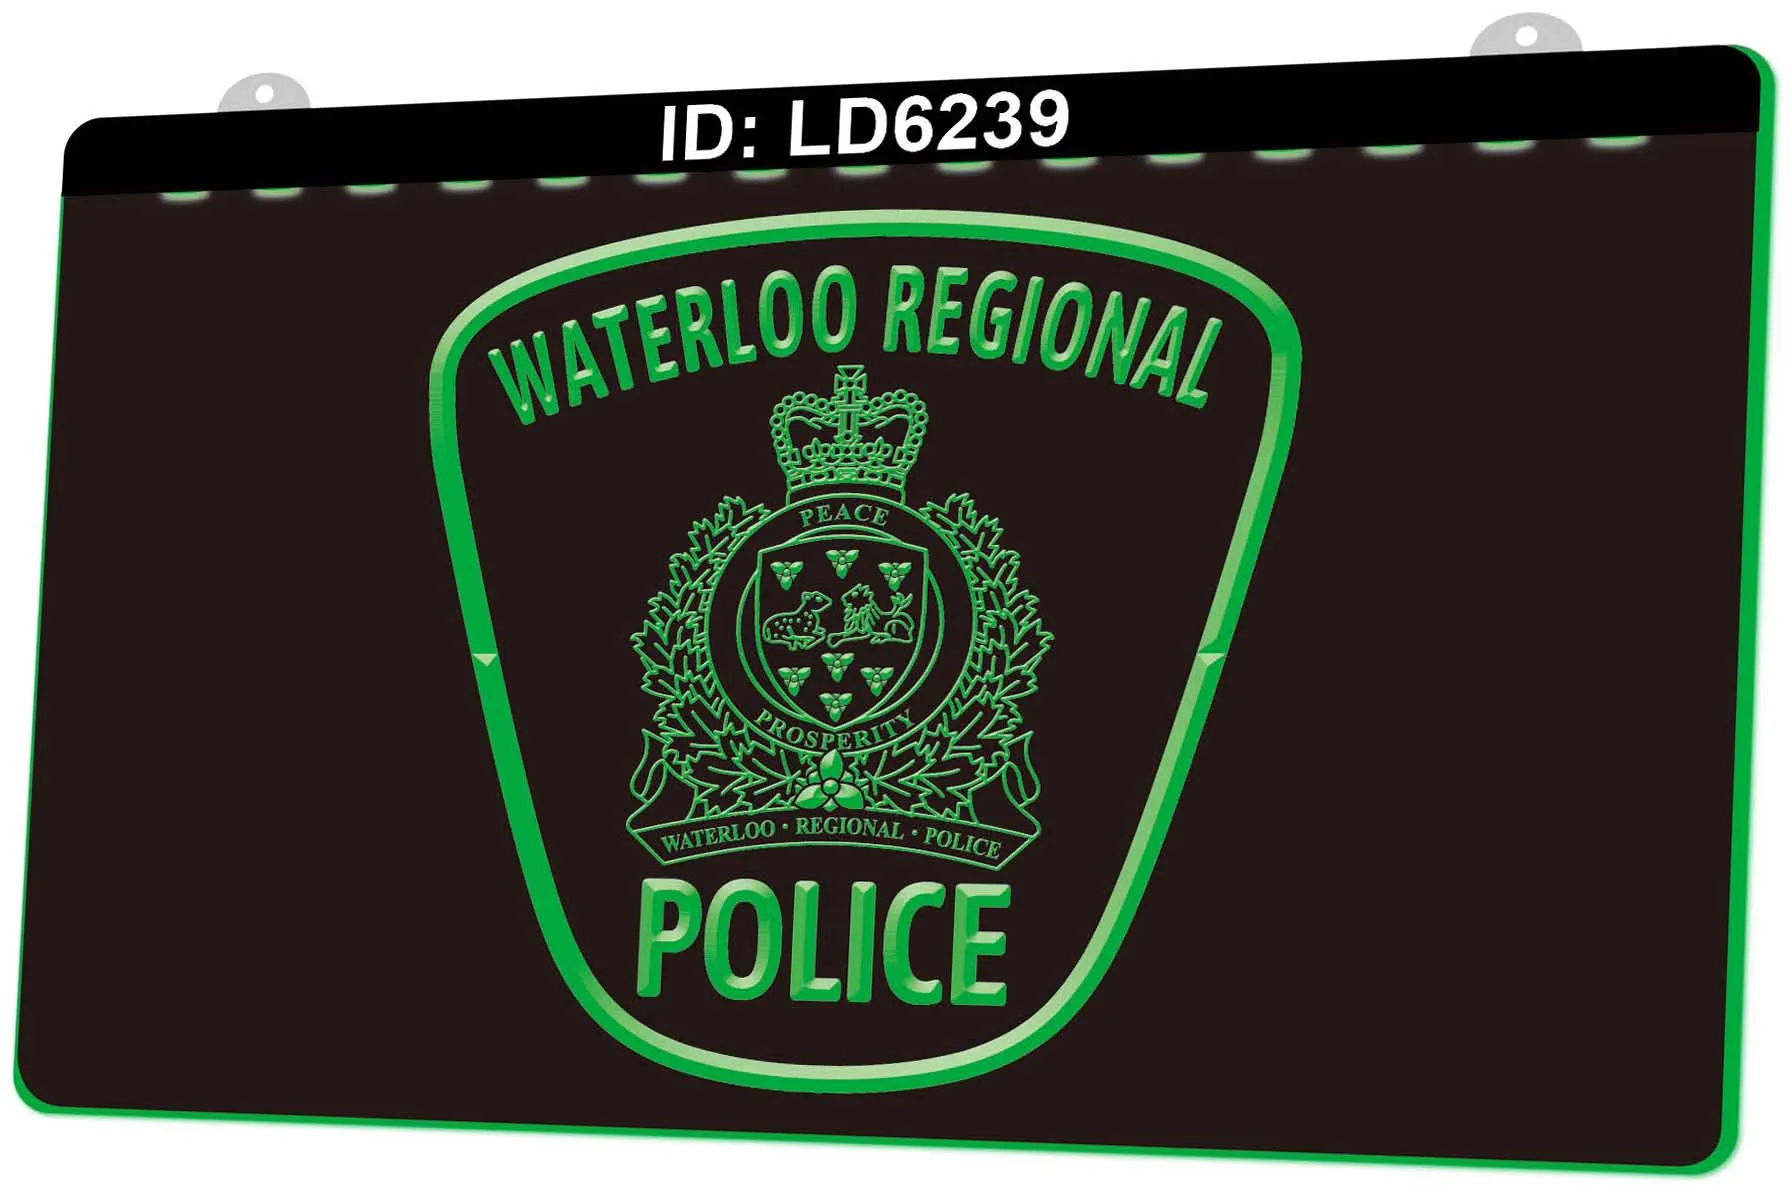 LD6239 Vendita al dettaglio all'ingrosso del segno luminoso del LED dell'incisione regionale della polizia 3D di Waterloo